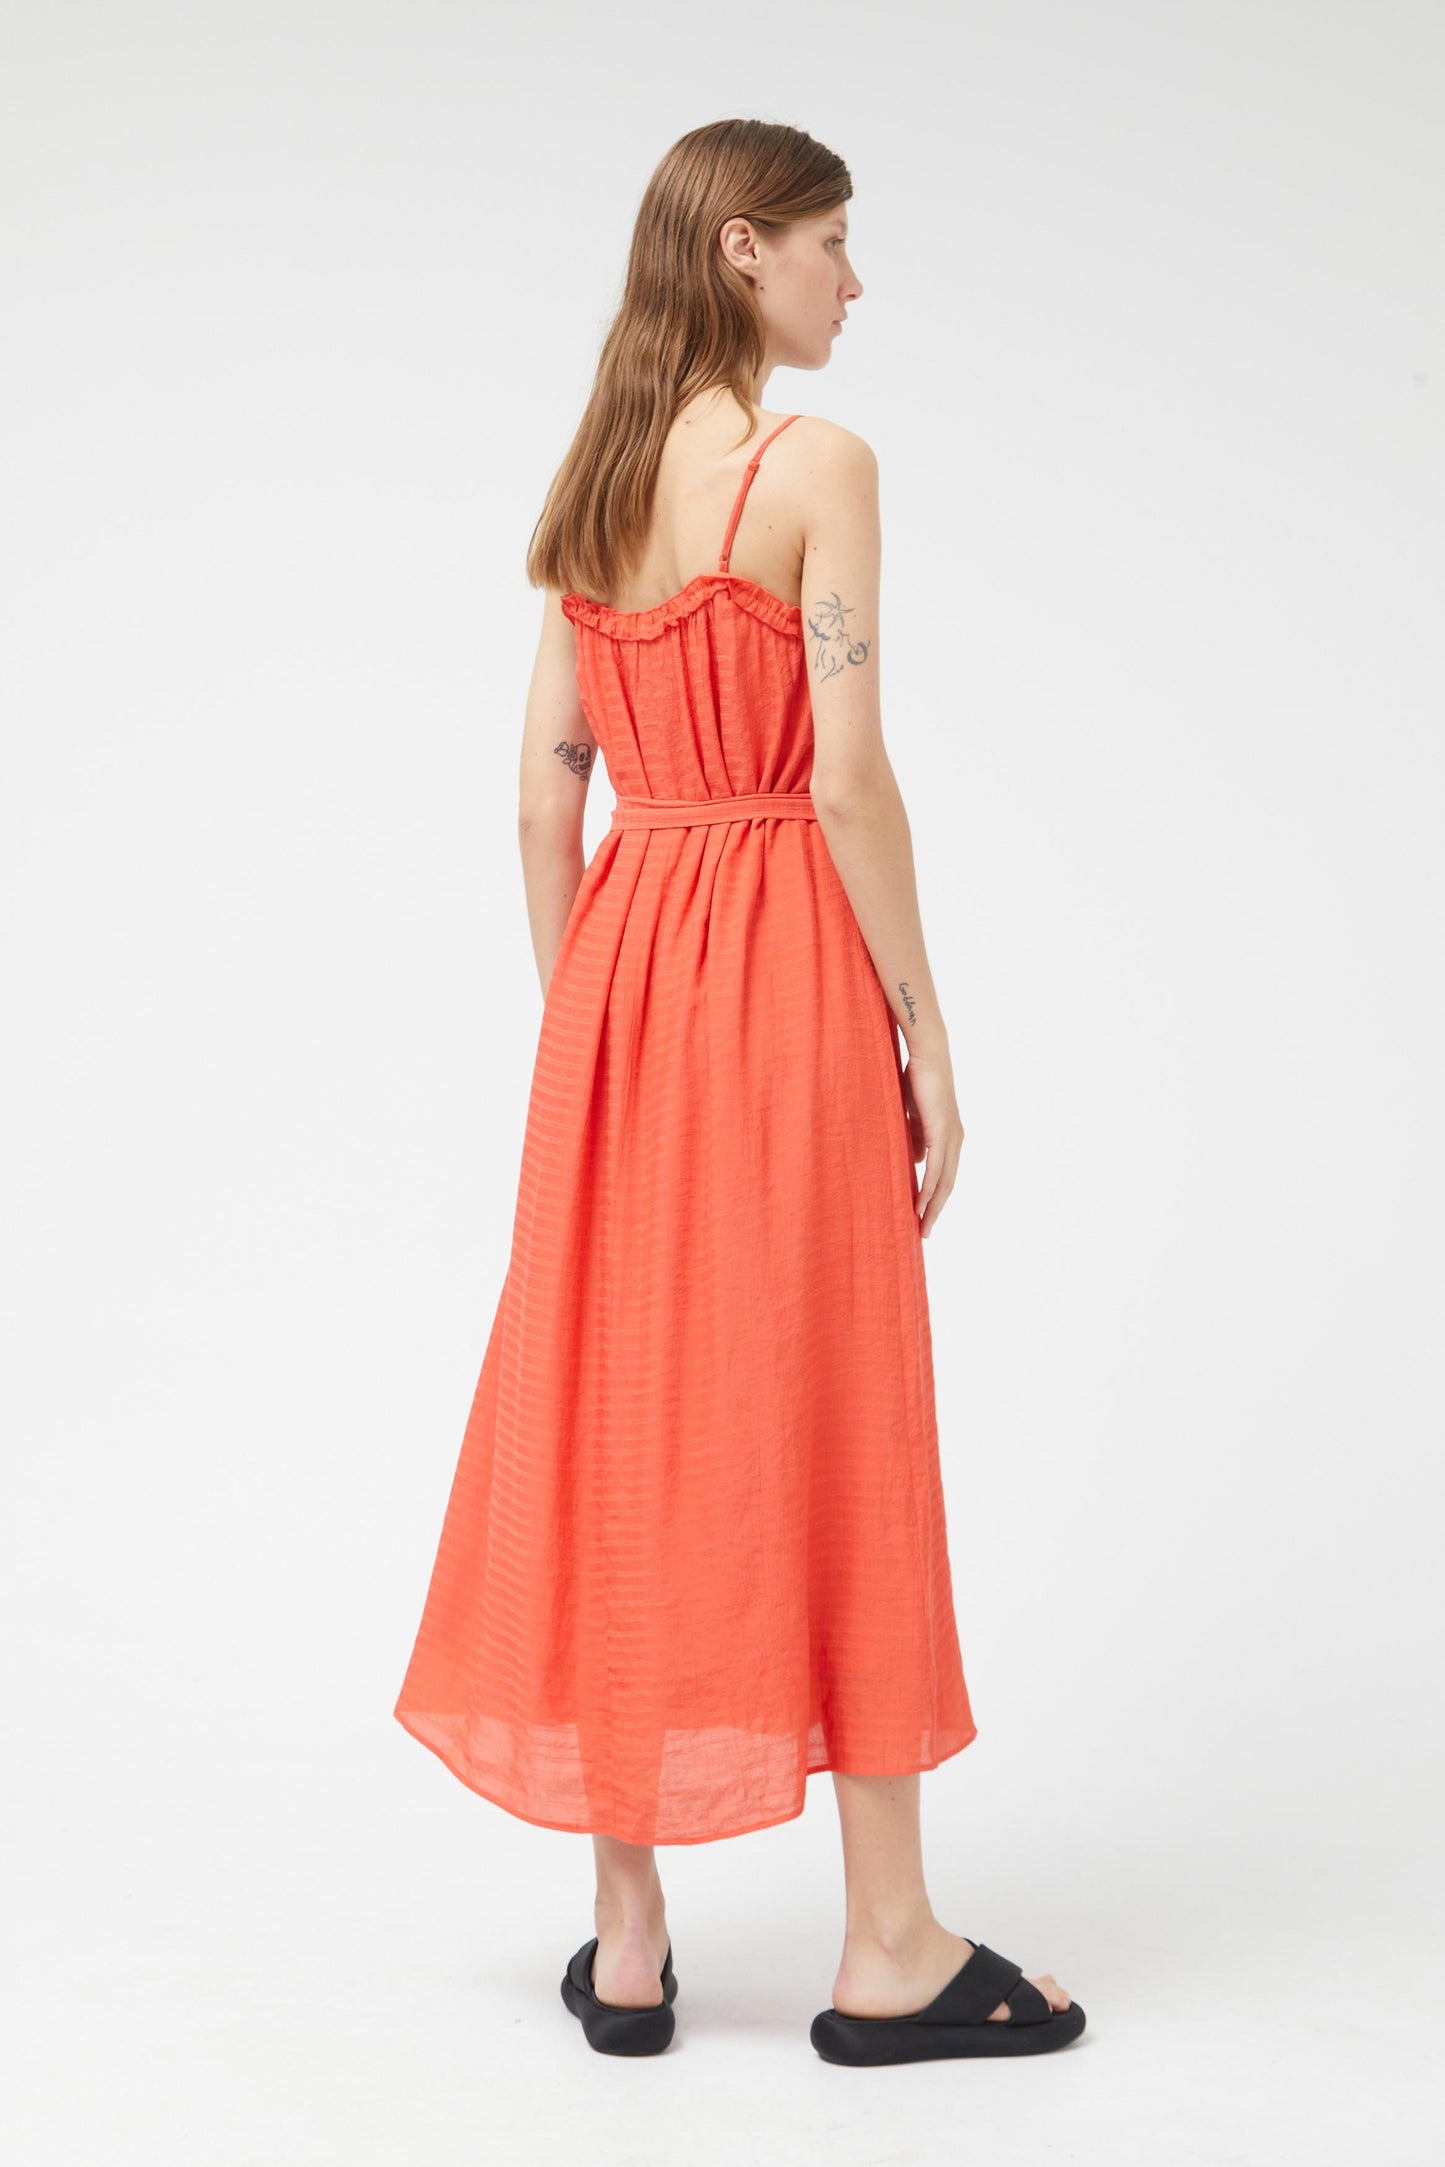 Long orange strap dress